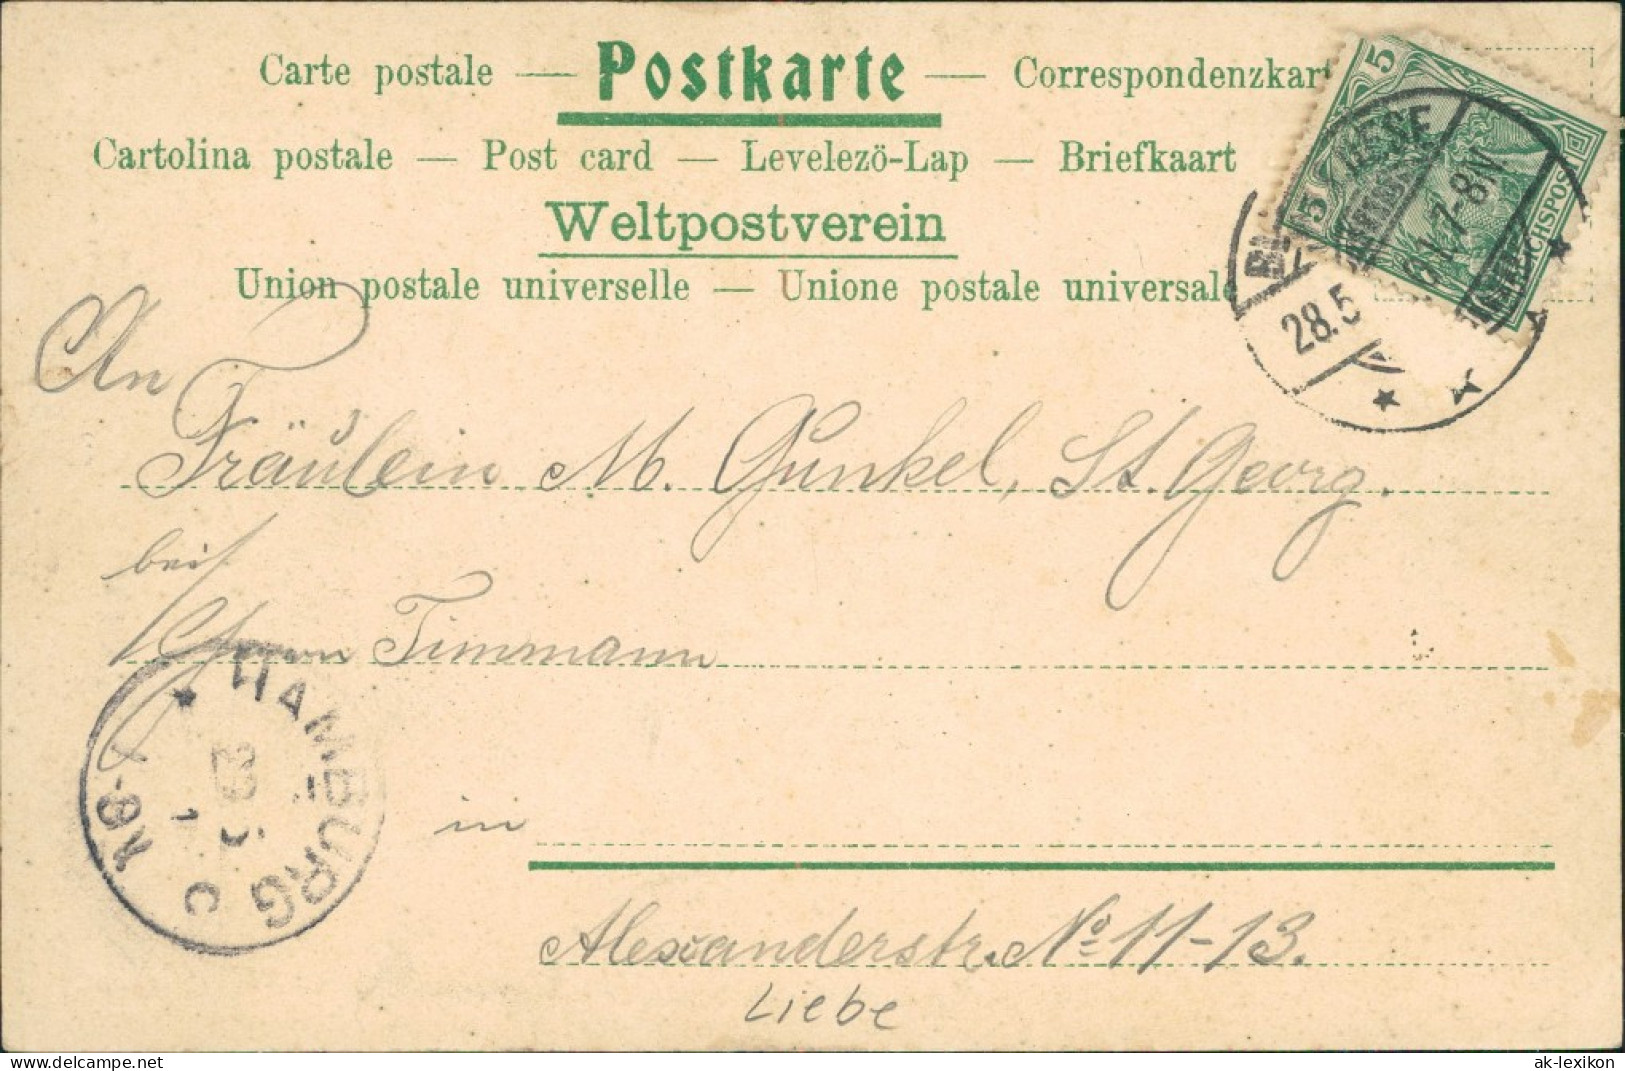 Ansichtskarte  Liebespaar Festkleid Spruch: Die Linde Blühte 1901 - Philosophie